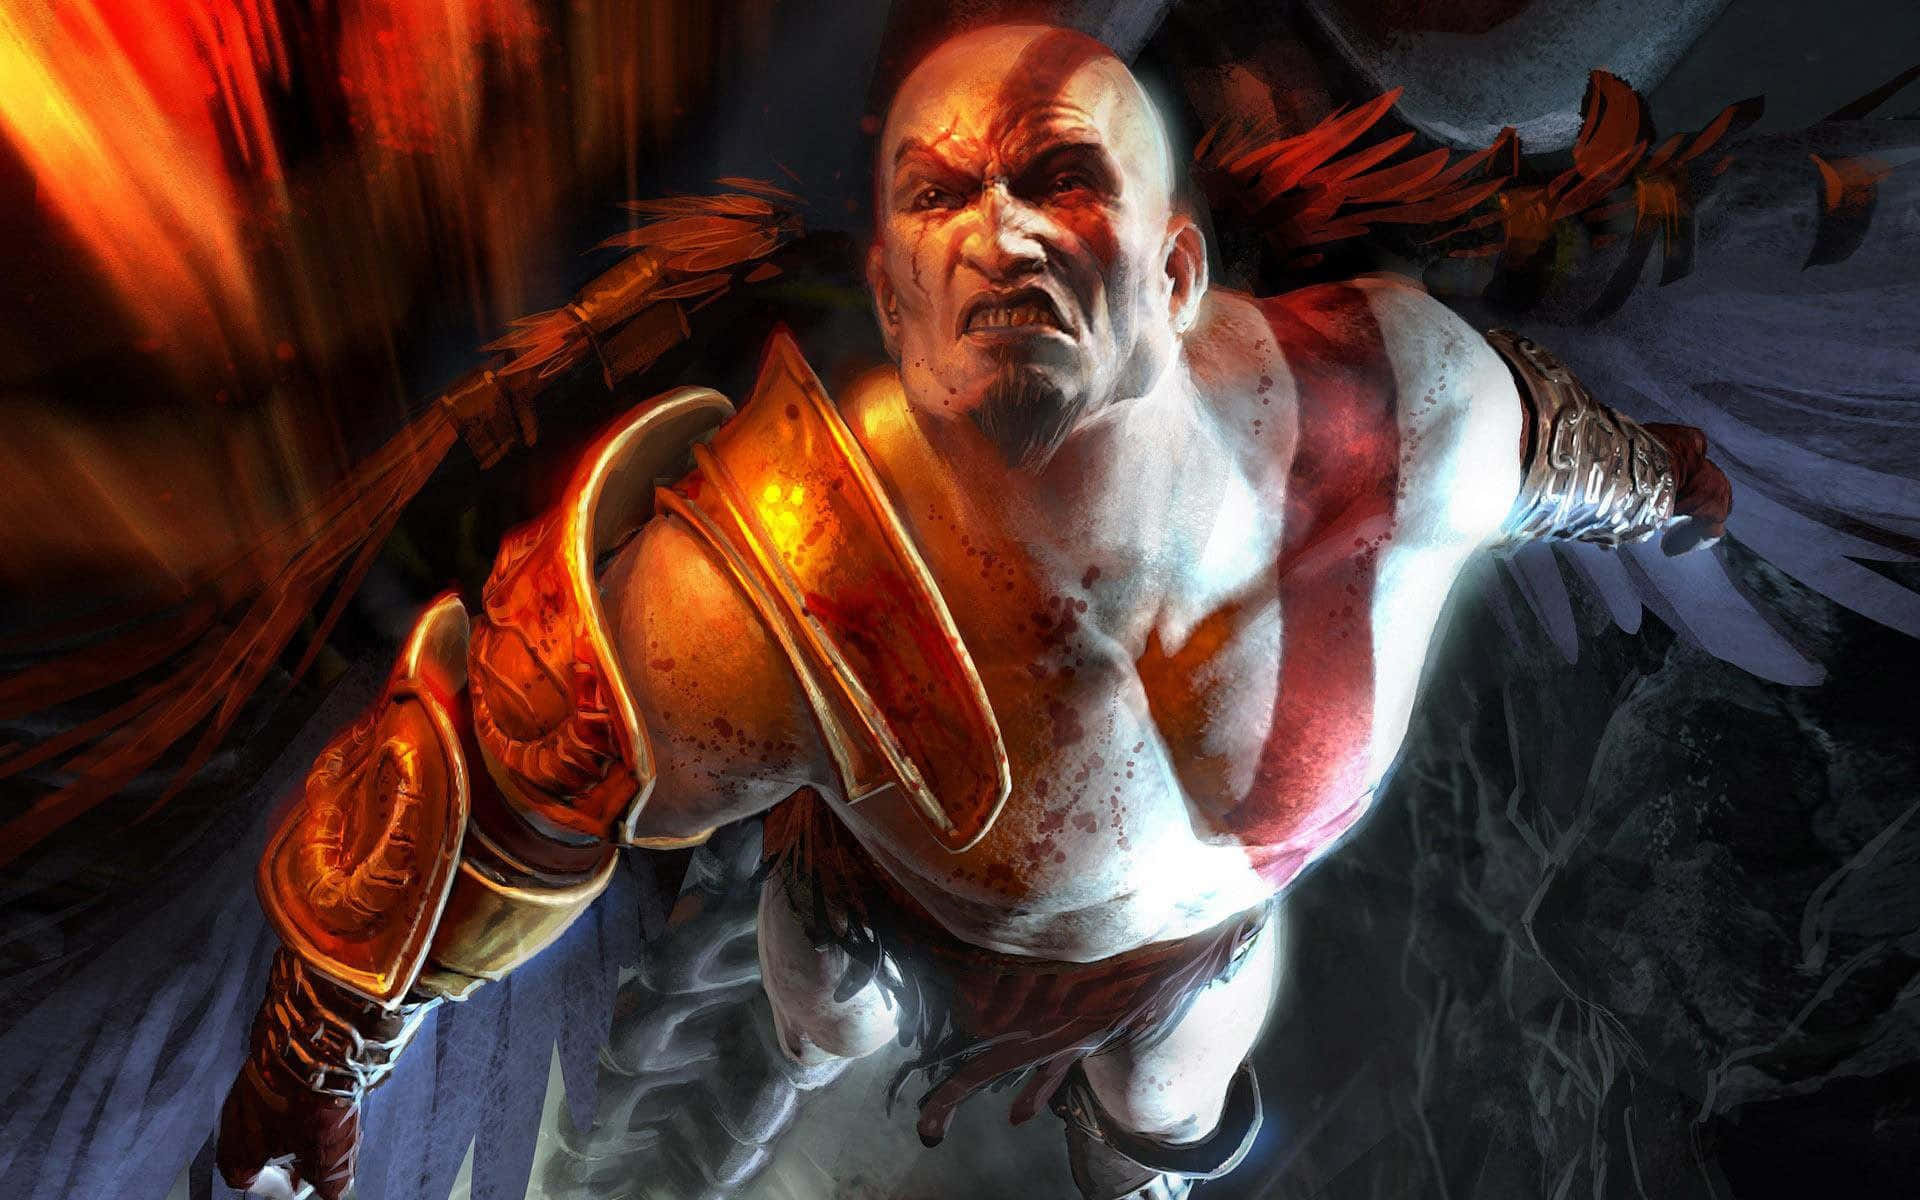 Kratos, krigsguden, går i kamp mod de olympiske guder. Wallpaper